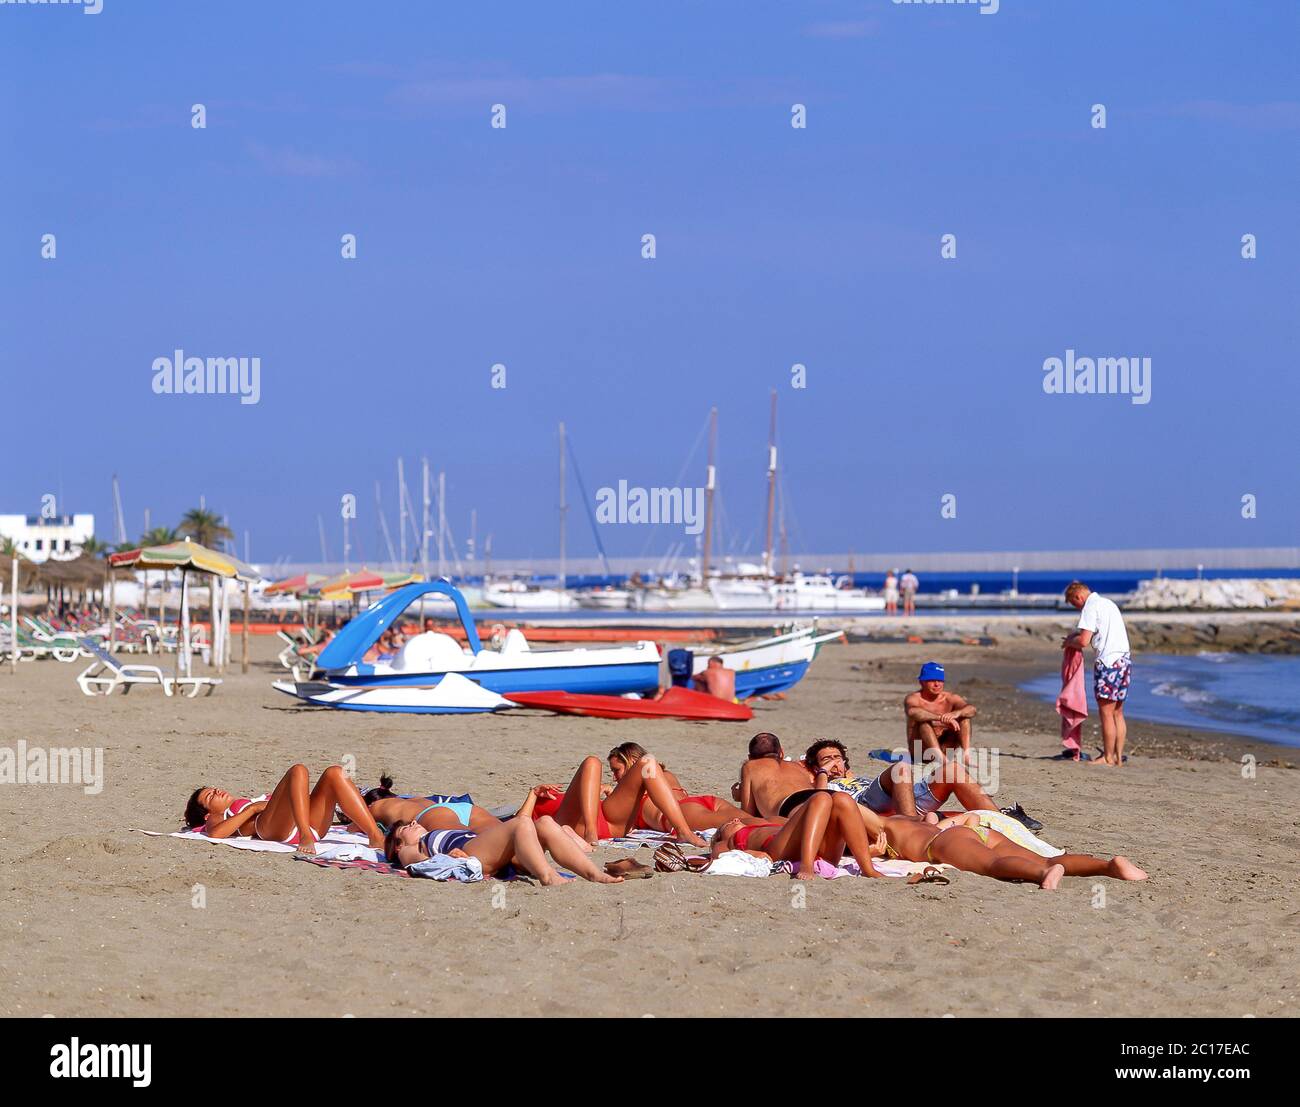 Bains de soleil de groupe sur la plage, Marbella, Costa del sol, province de Malaga, Andalousie, Espagne Banque D'Images